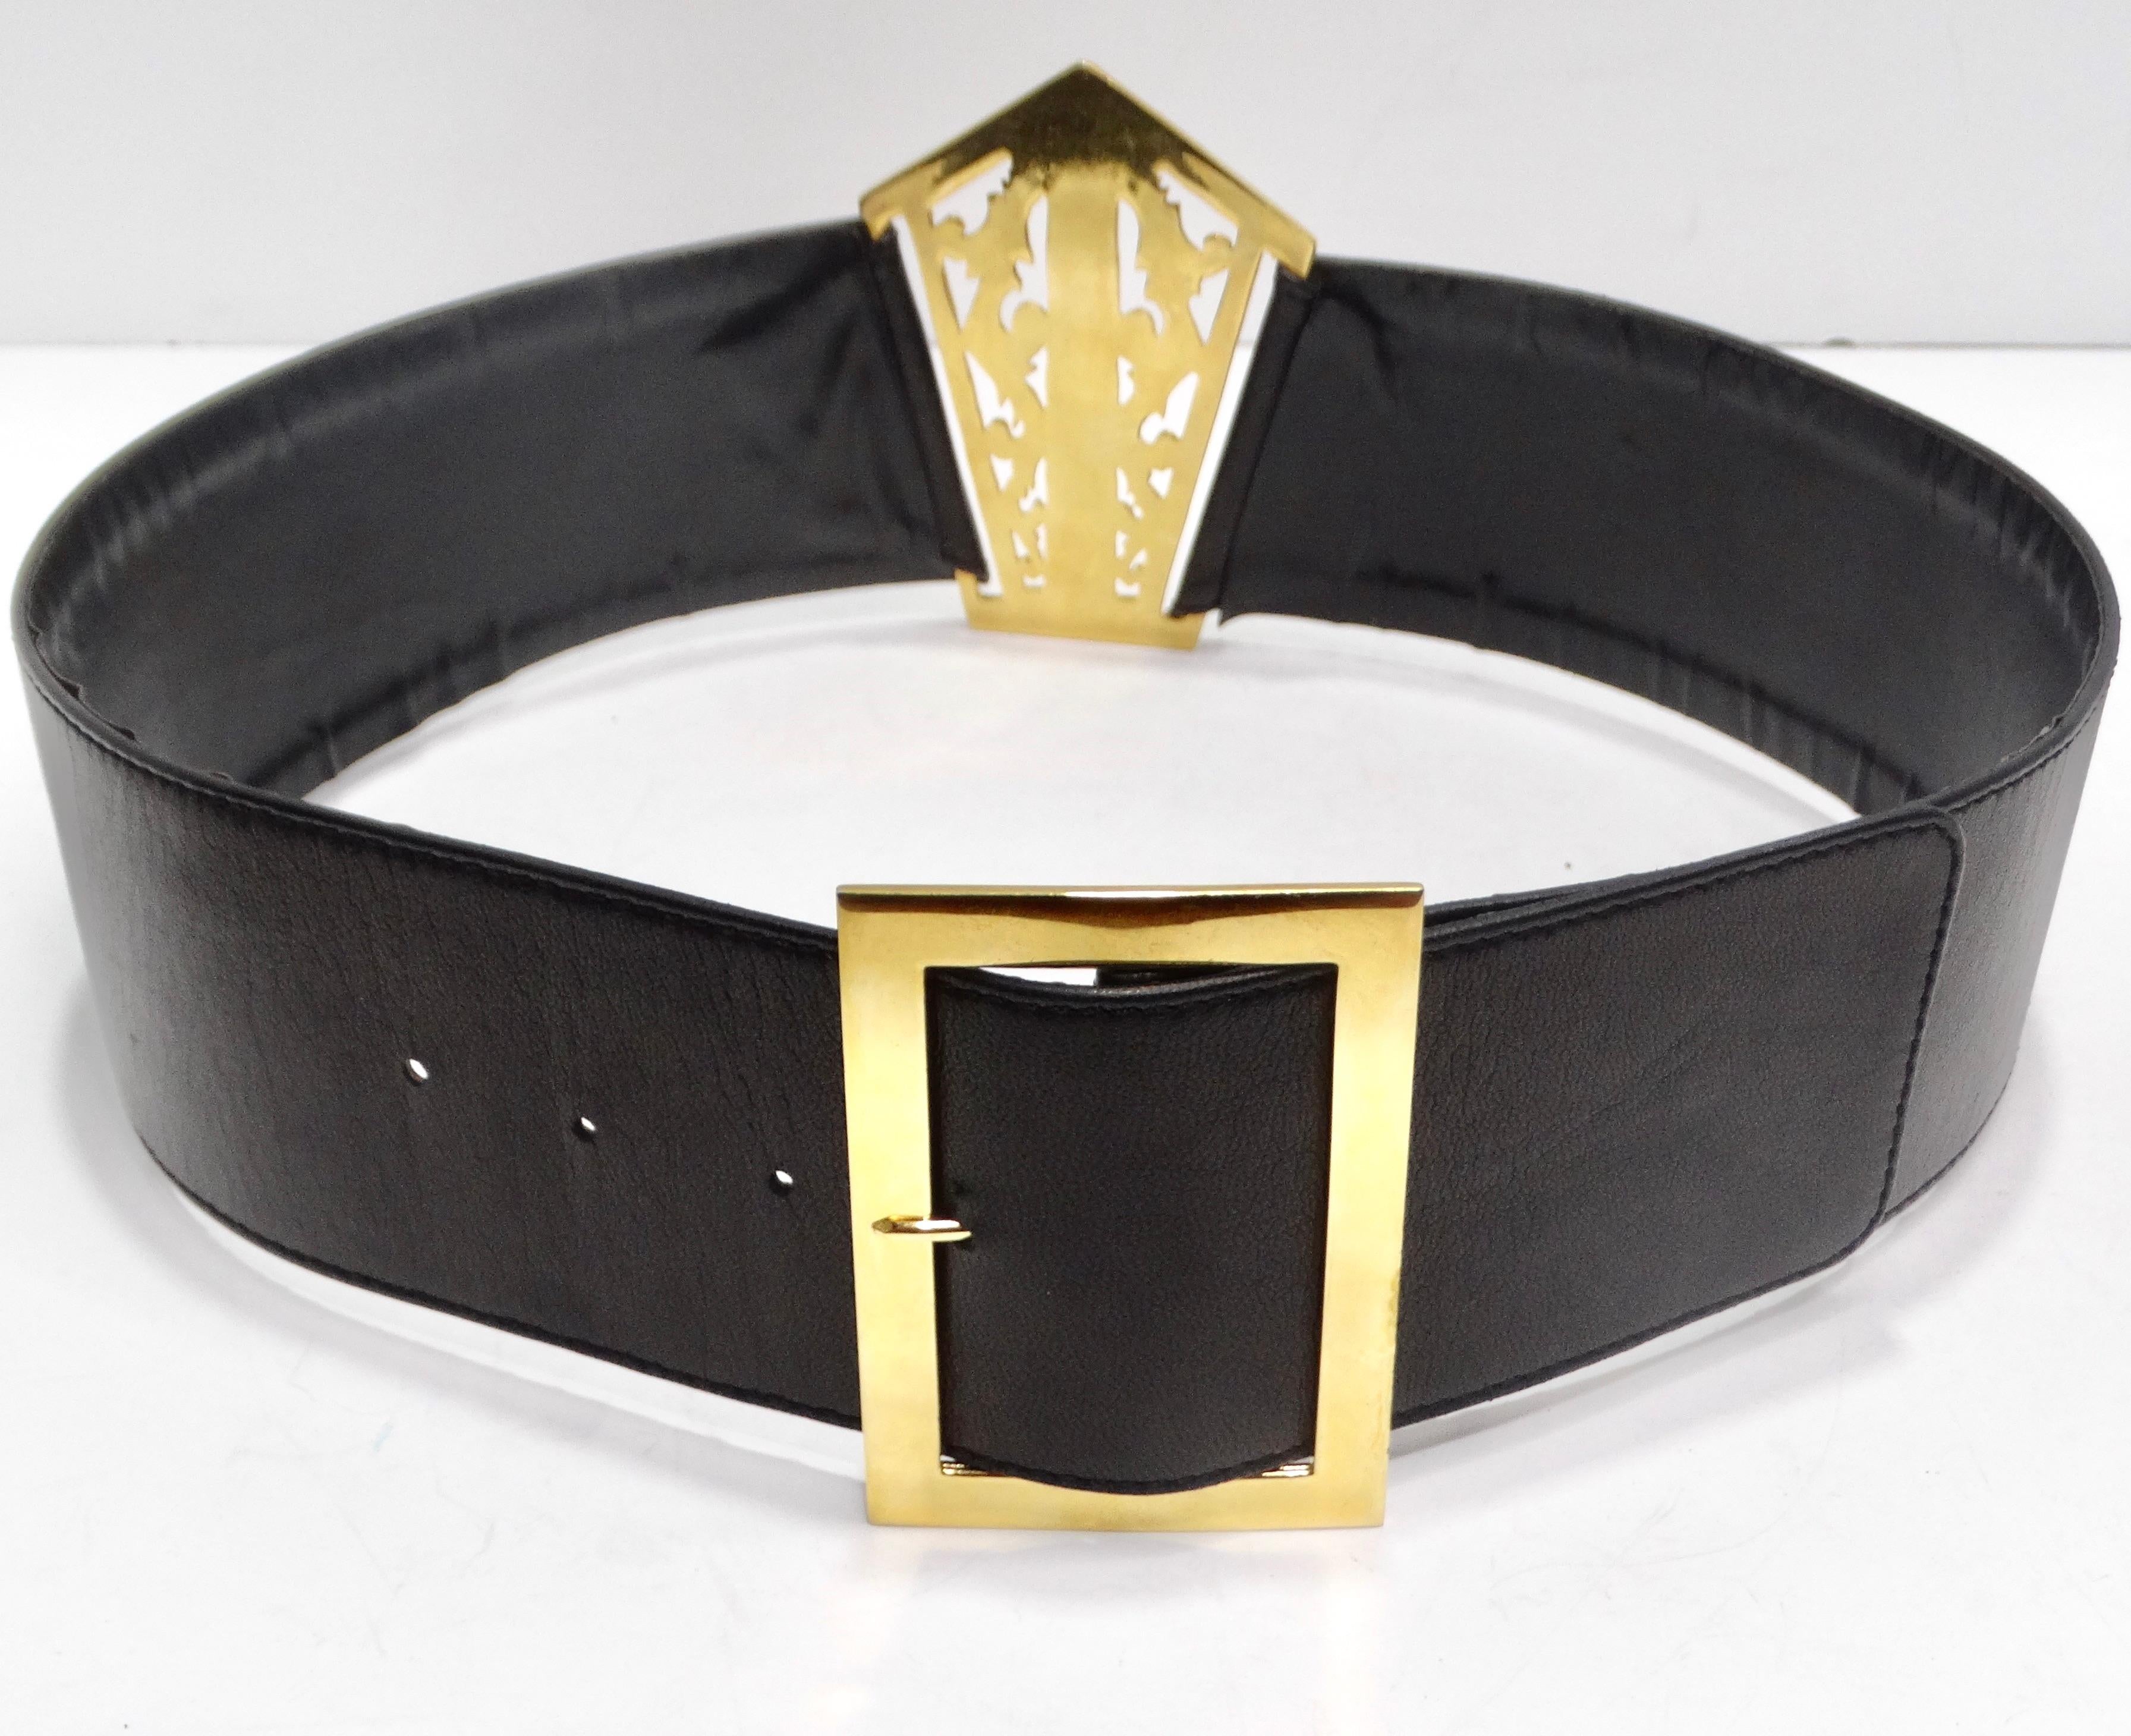 Rehaussez votre style grâce à l'allure intemporelle de la ceinture Chanel en cuir noir filigrané plaqué or 24k des années 1980 - une large pièce de cuir noir qui exsude le glamour vintage. Cette ceinture est dotée d'une luxueuse boucle carrée